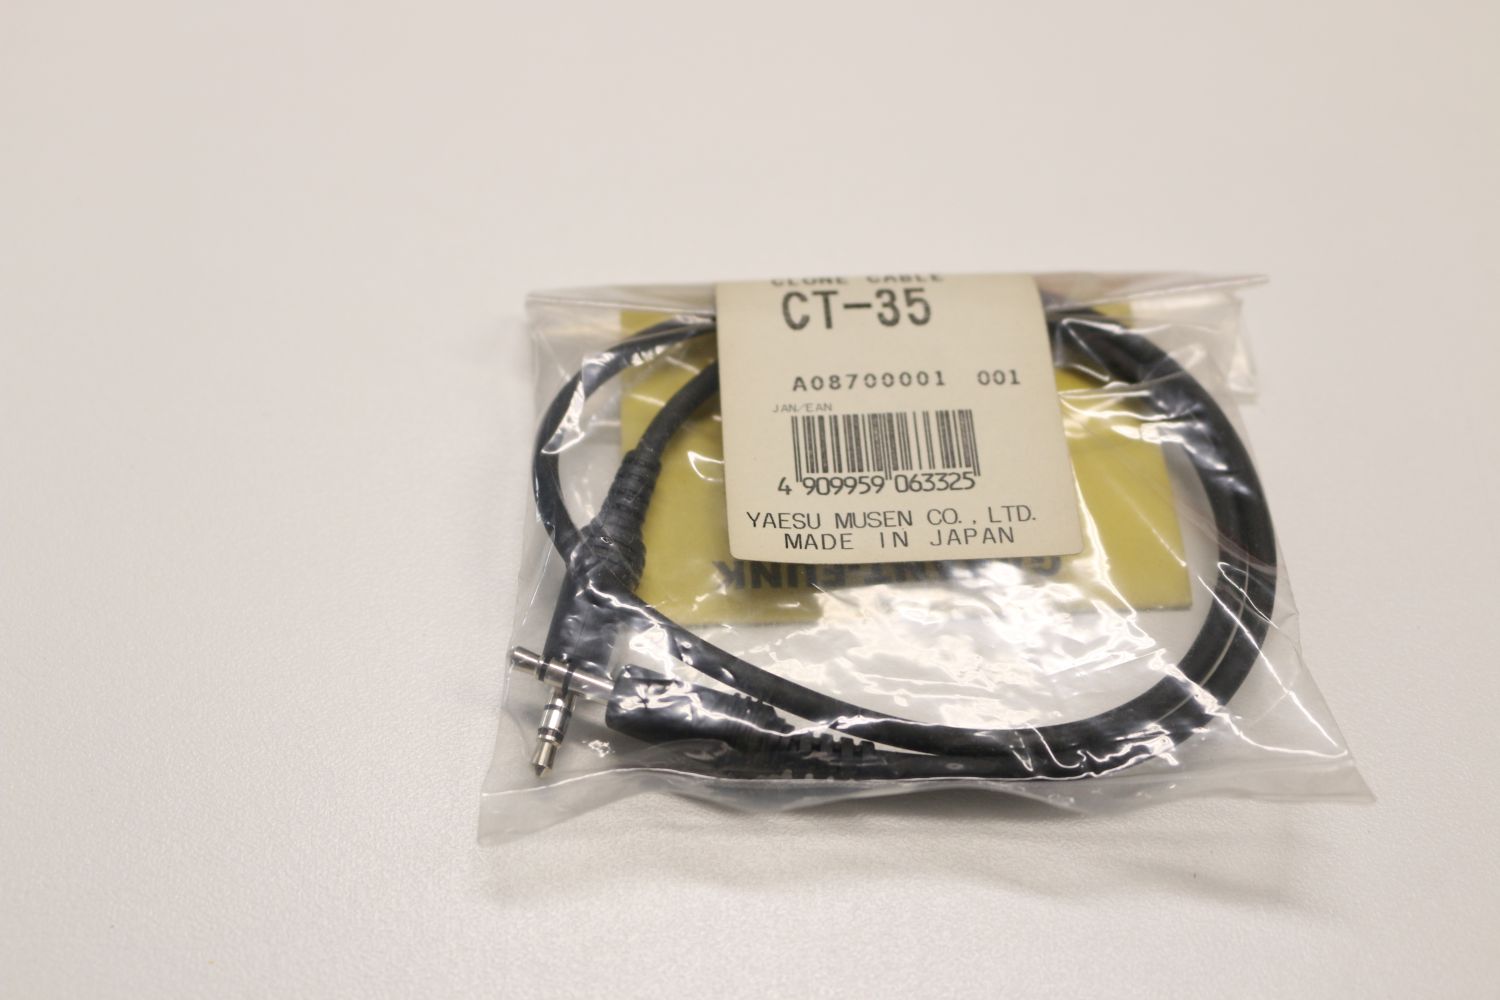 Yaesu CT-35 Clone Cable